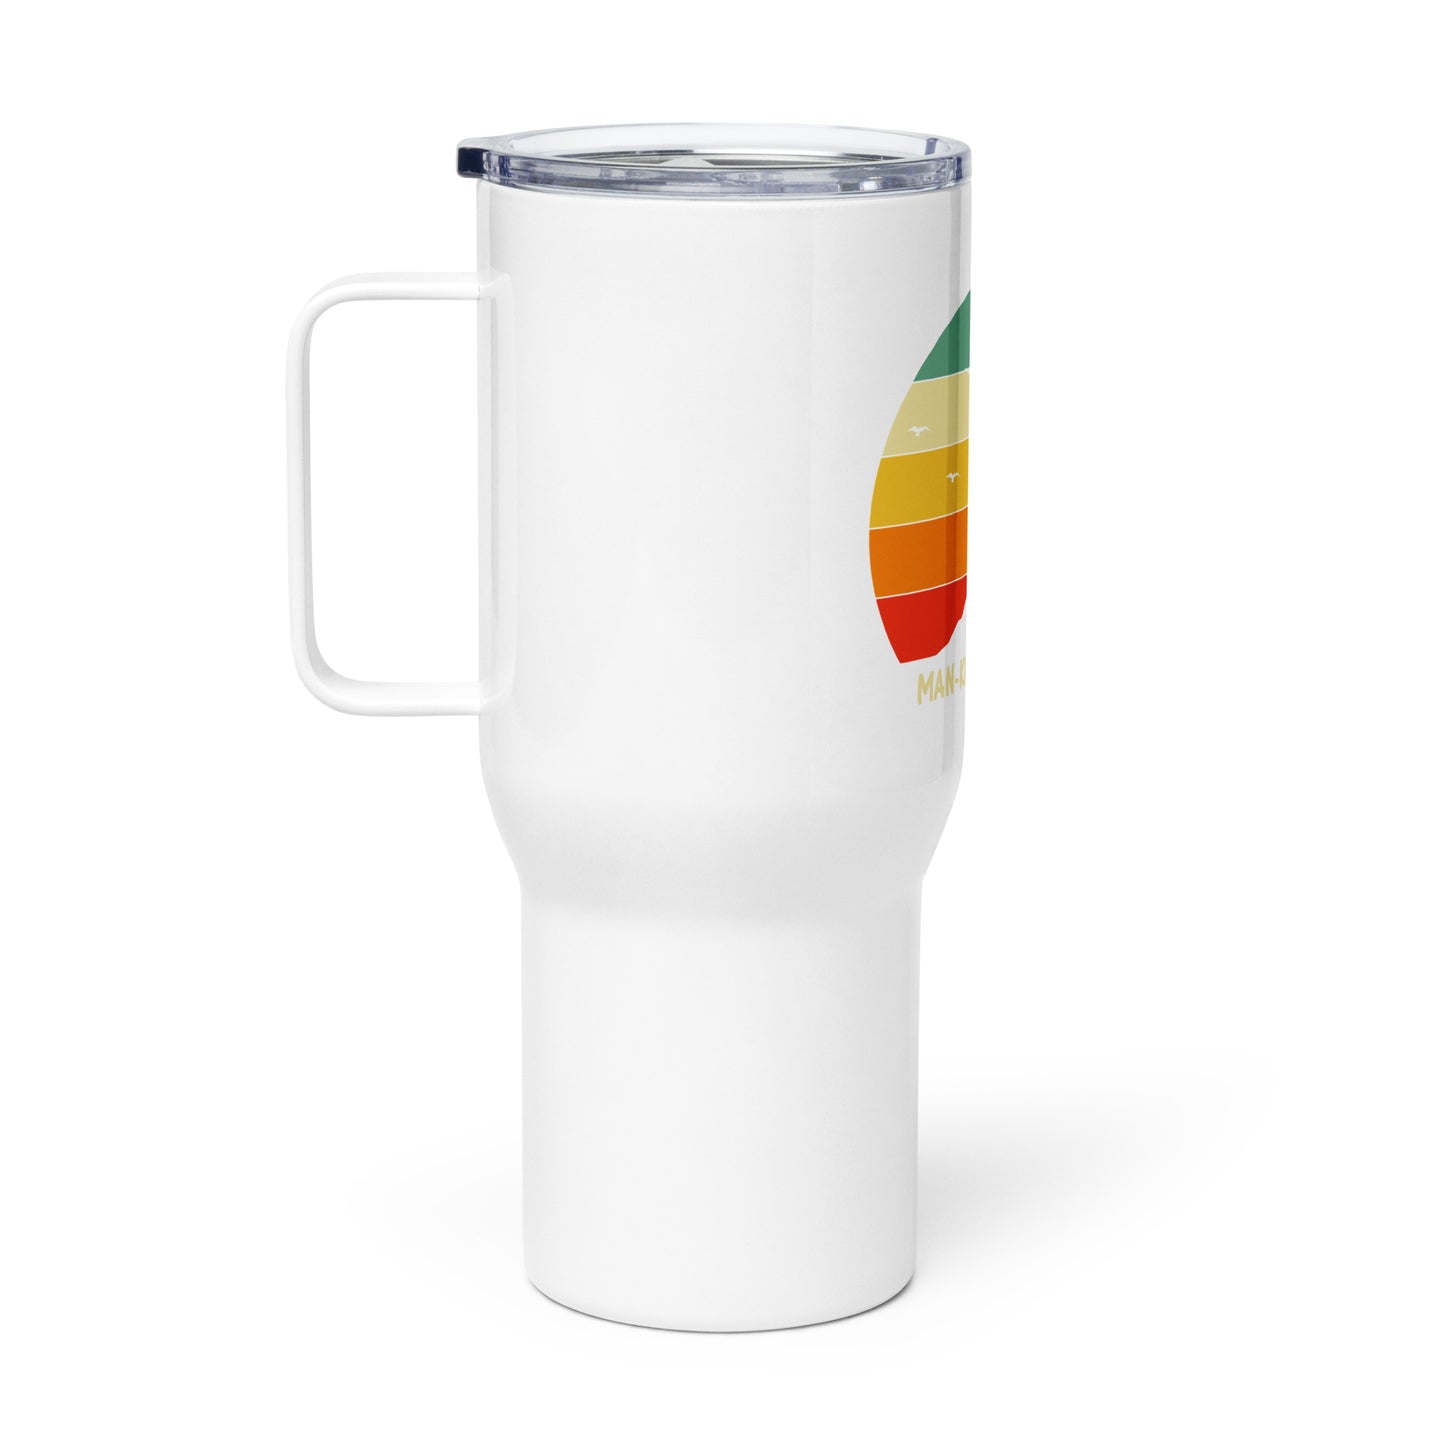 Be Kind Travel mug with a handle